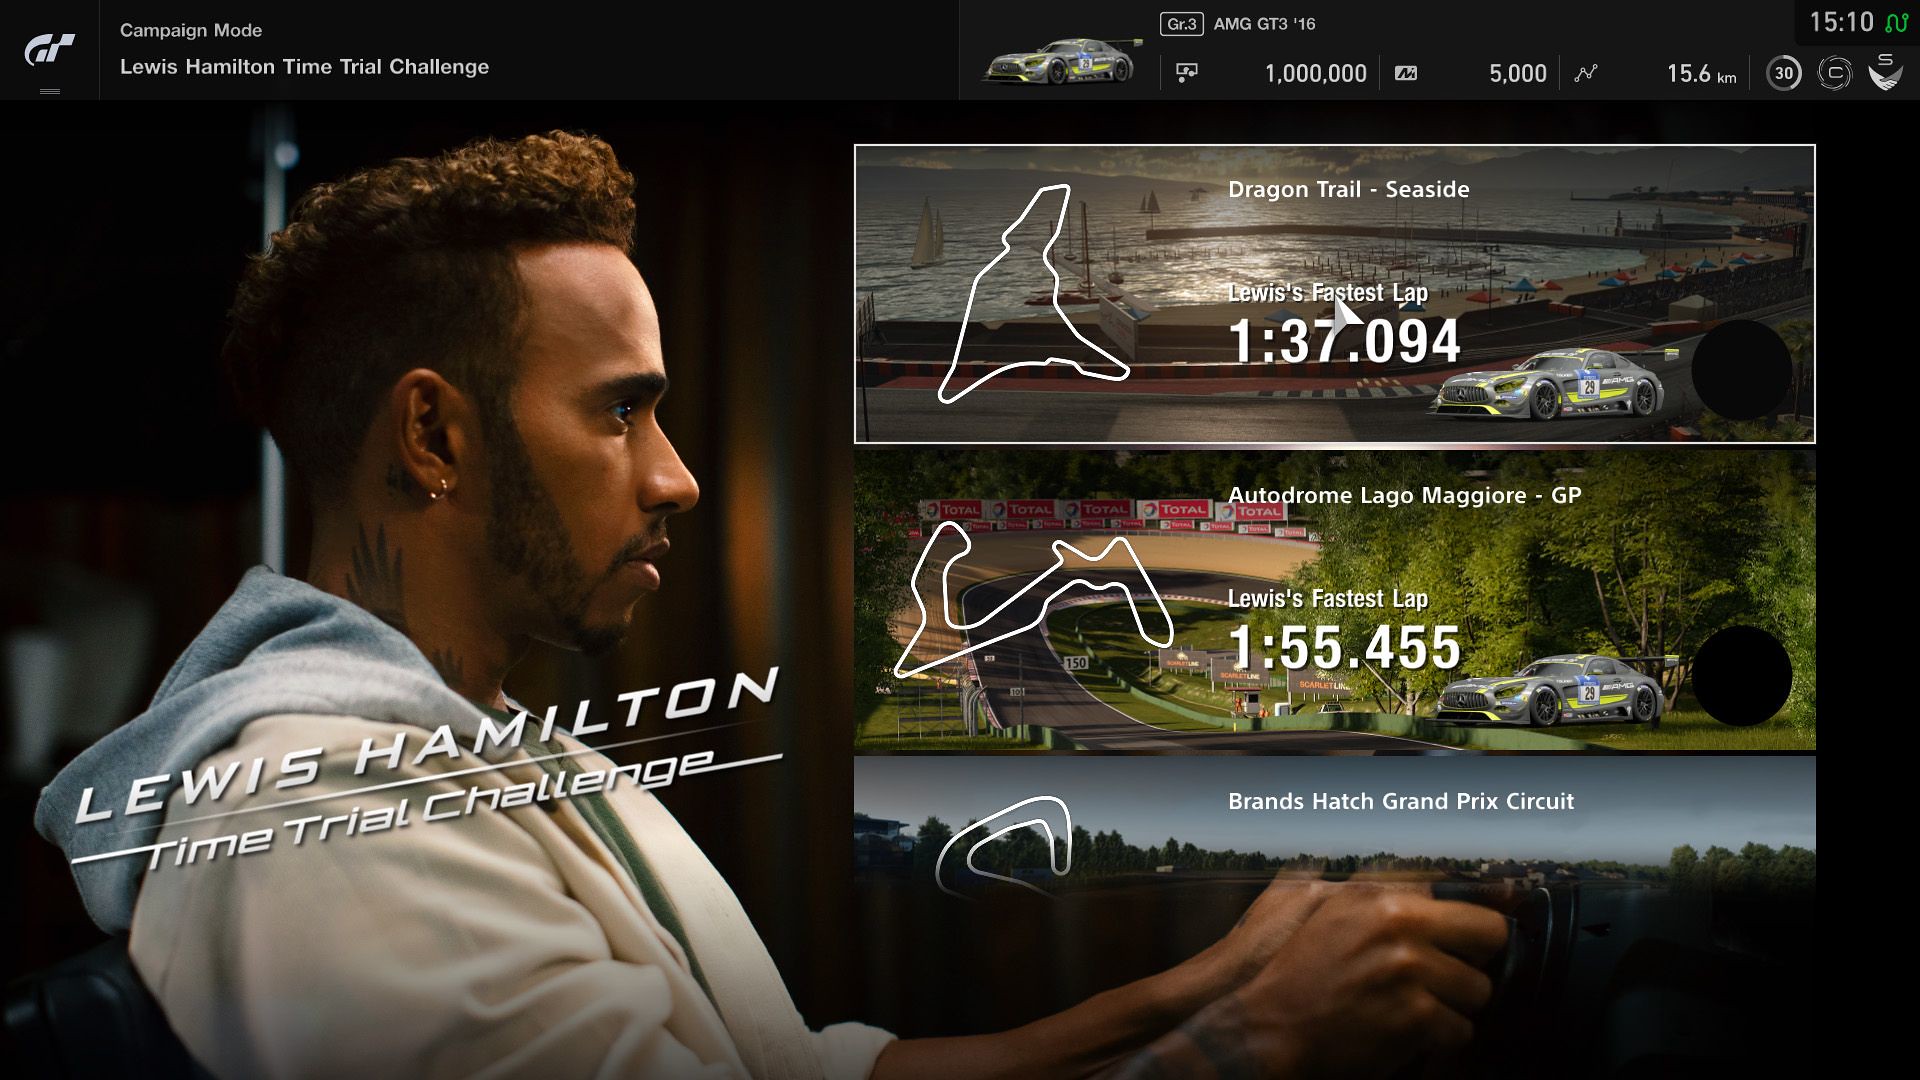 49128696236 14bedea43a k - Fordert die Rundzeiten des 6-fachen F1-Weltmeisters Lewis Hamilton in Gran Turismo Sport heraus